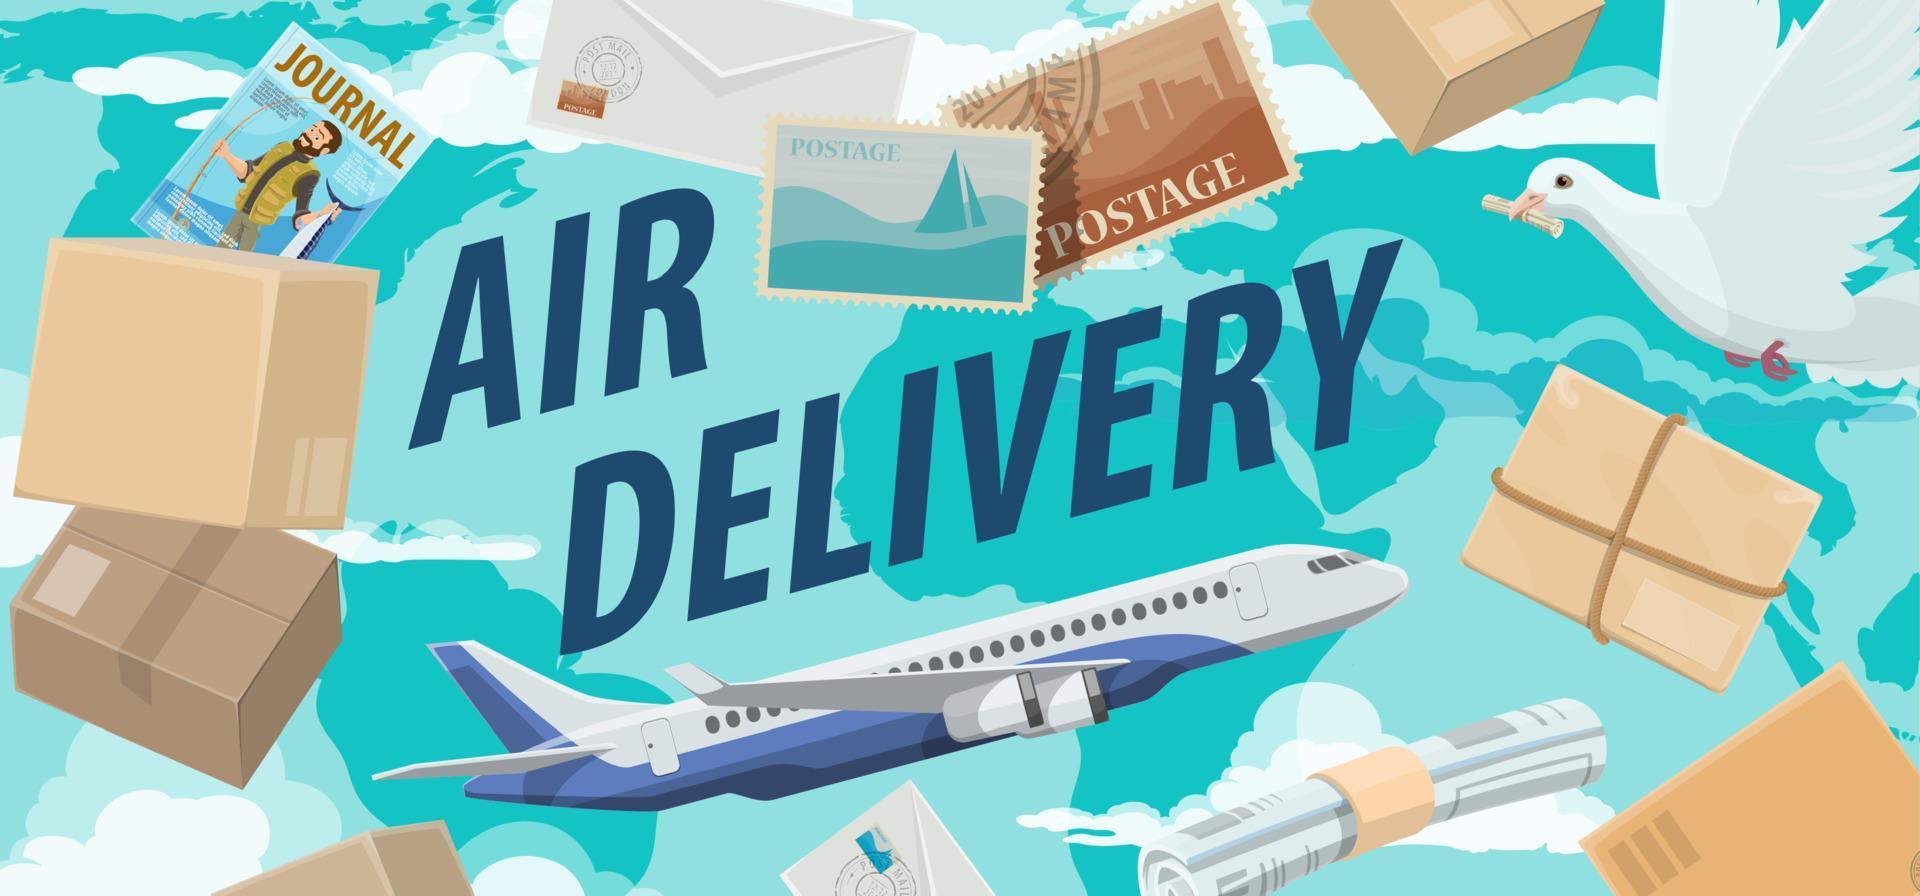 paquetes, cartas correo aéreo, servicio de entrega avia vector